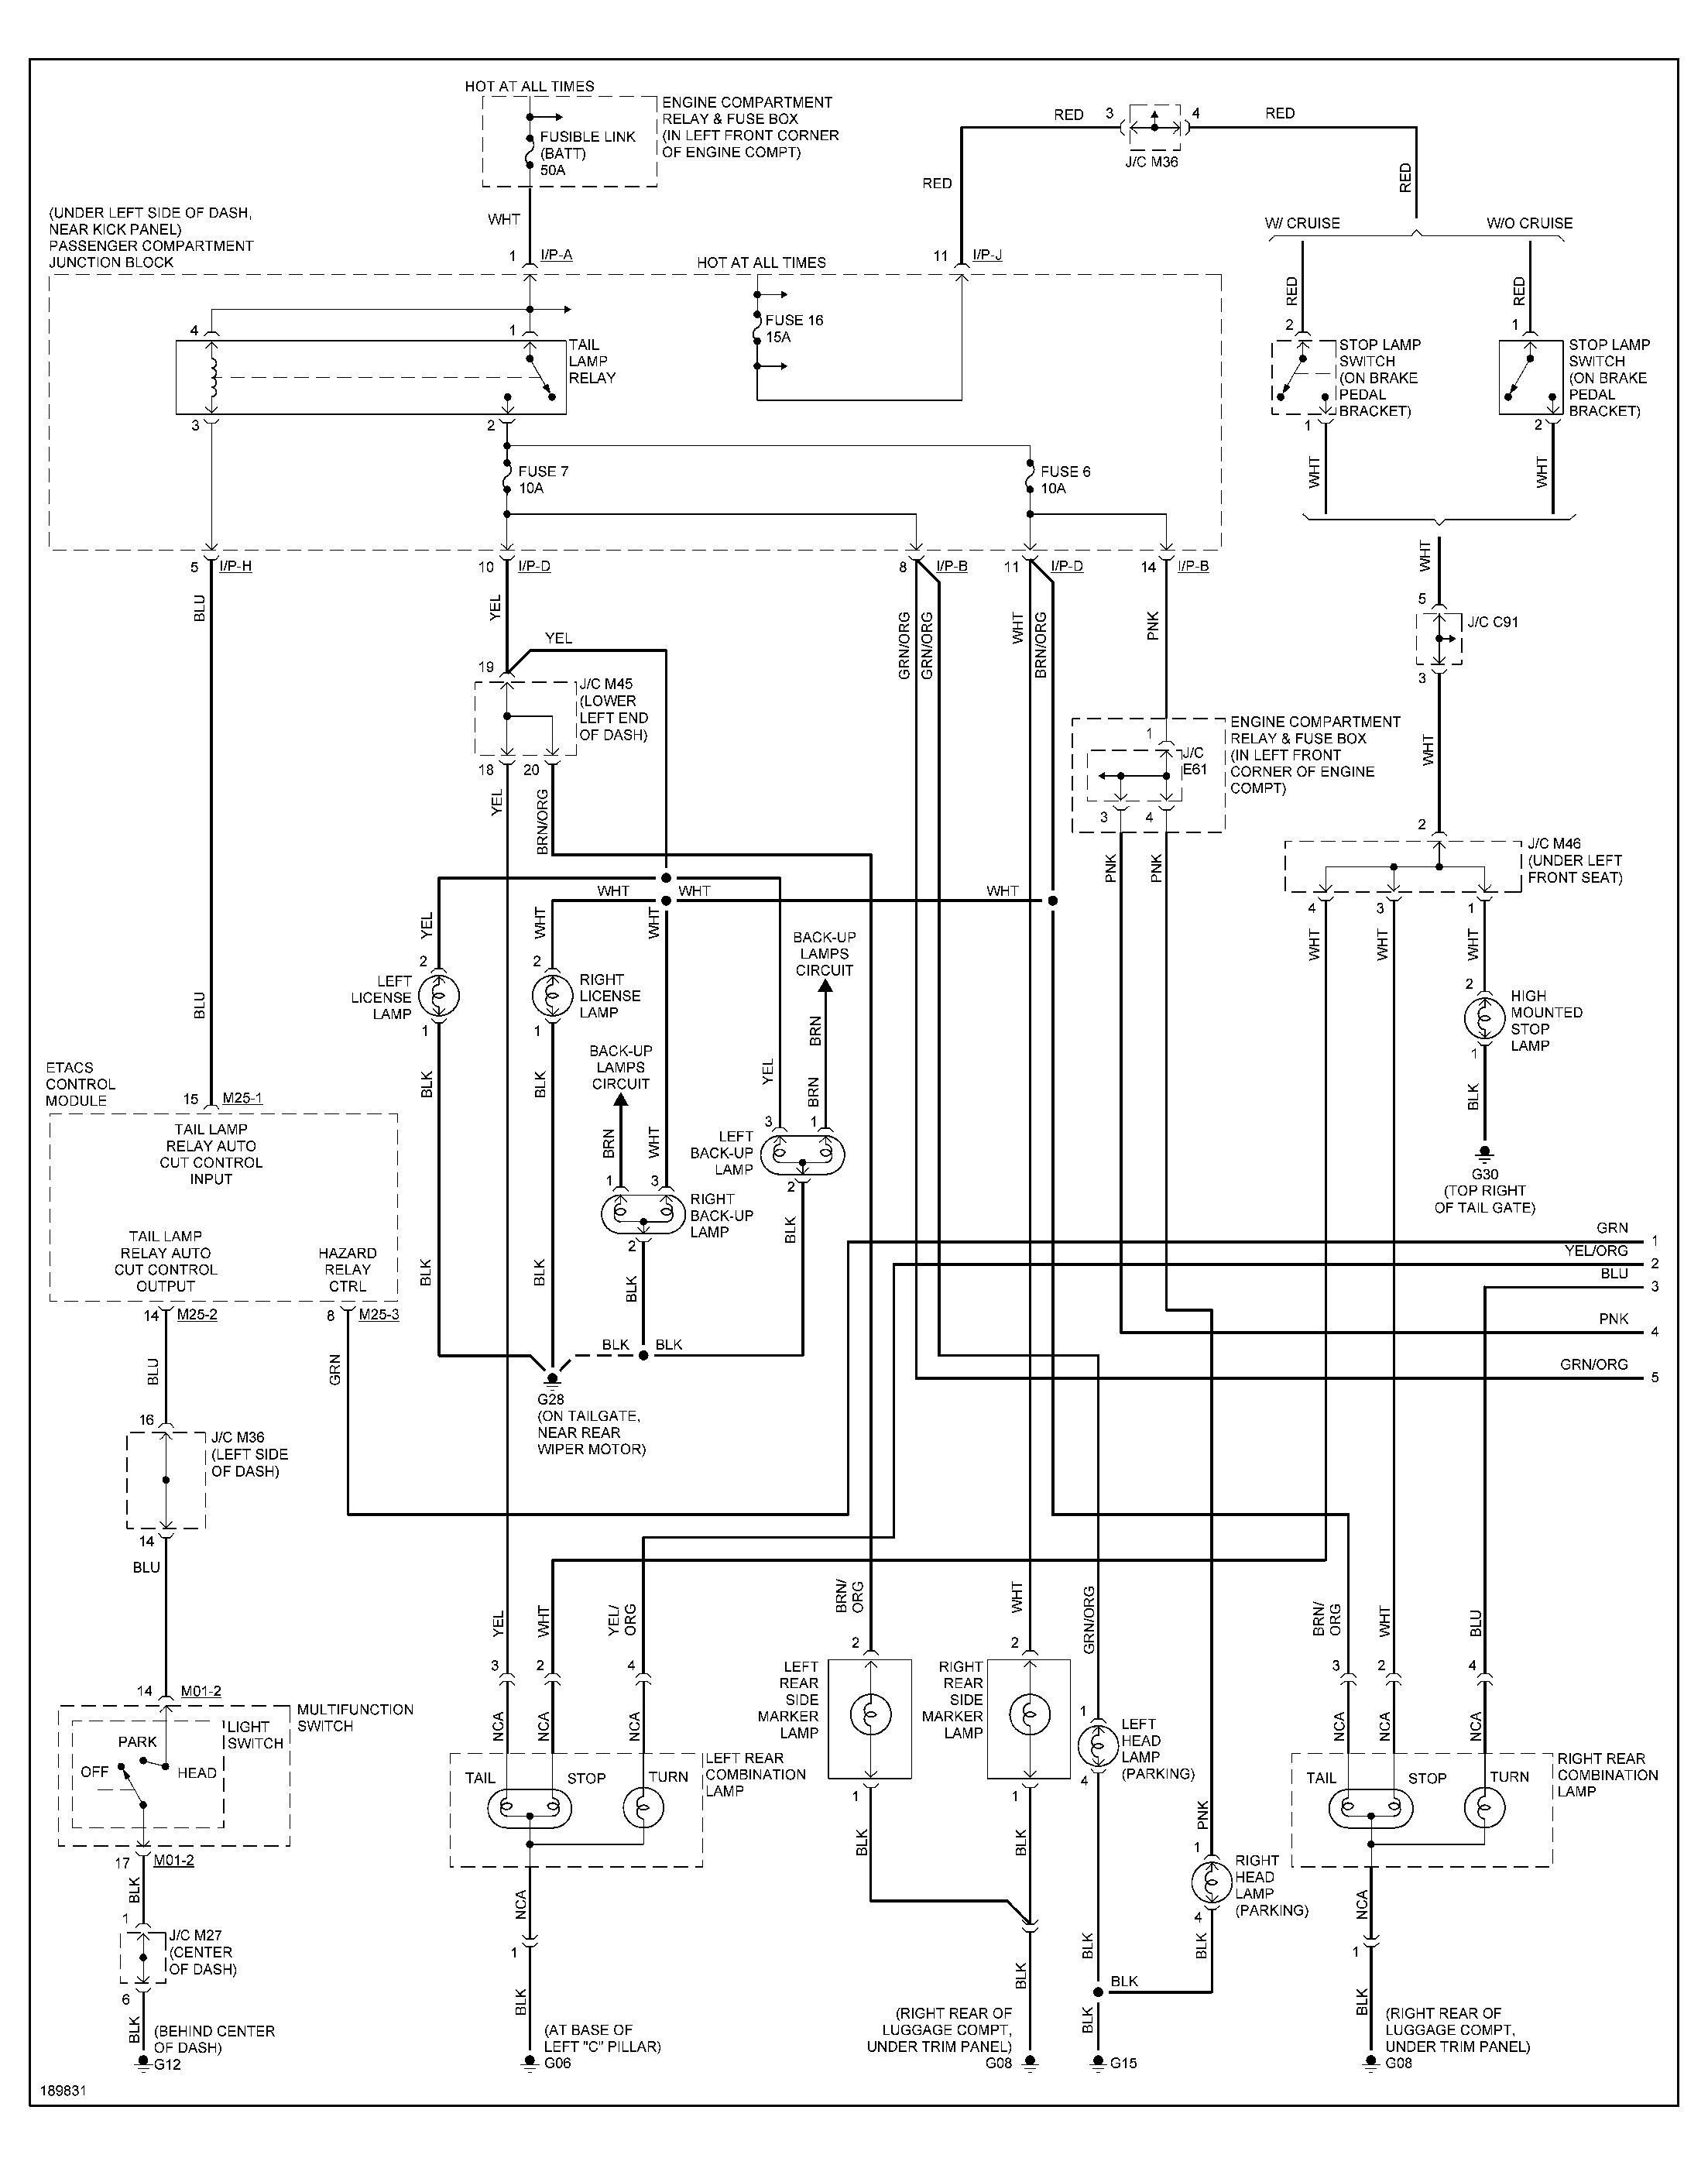 Hyundai Accent Wiring Diagram Hyundai Accent Wiring Diagram Wiring Diagram and Schematics